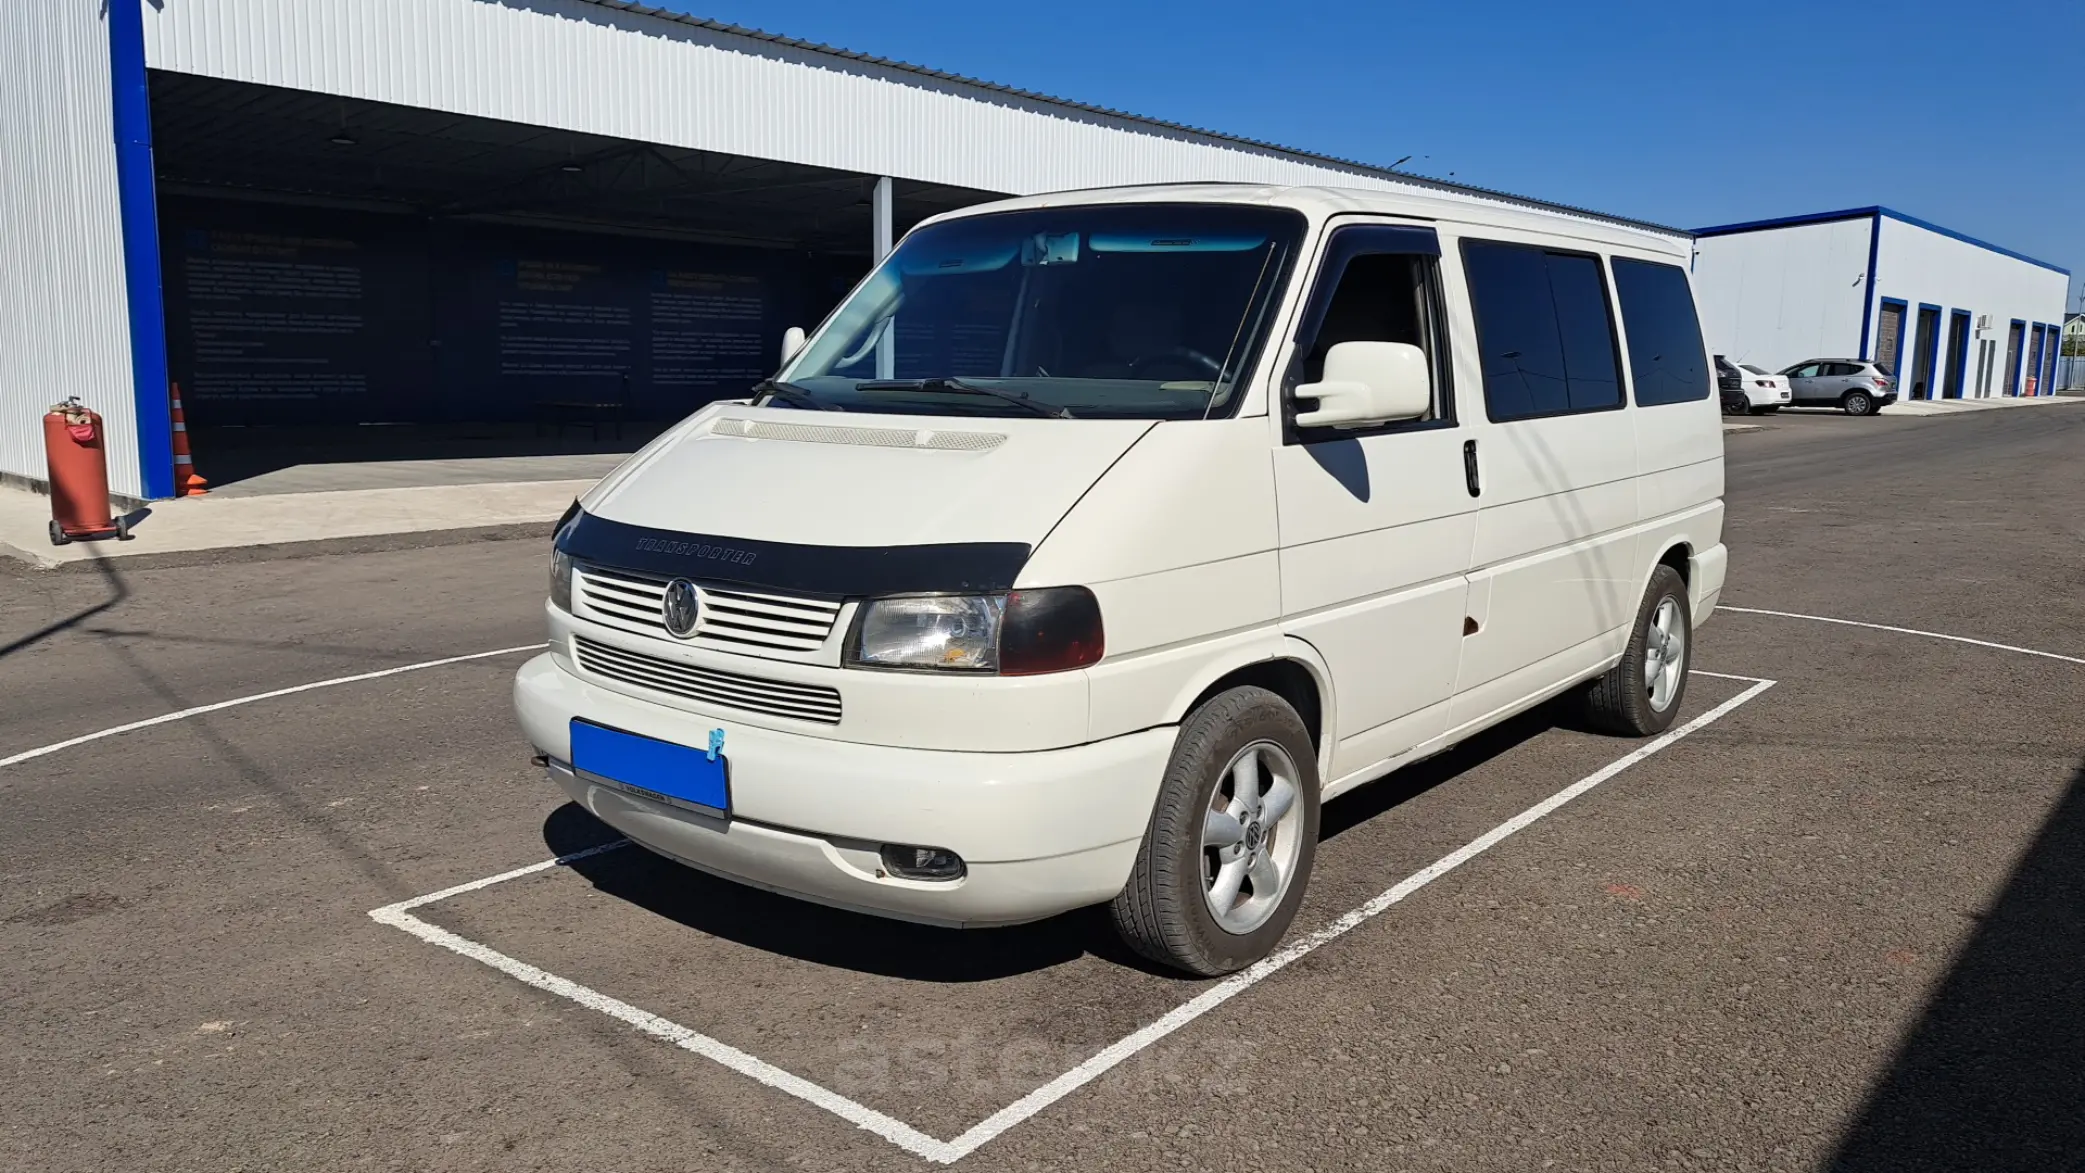 Volkswagen Multivan 2001